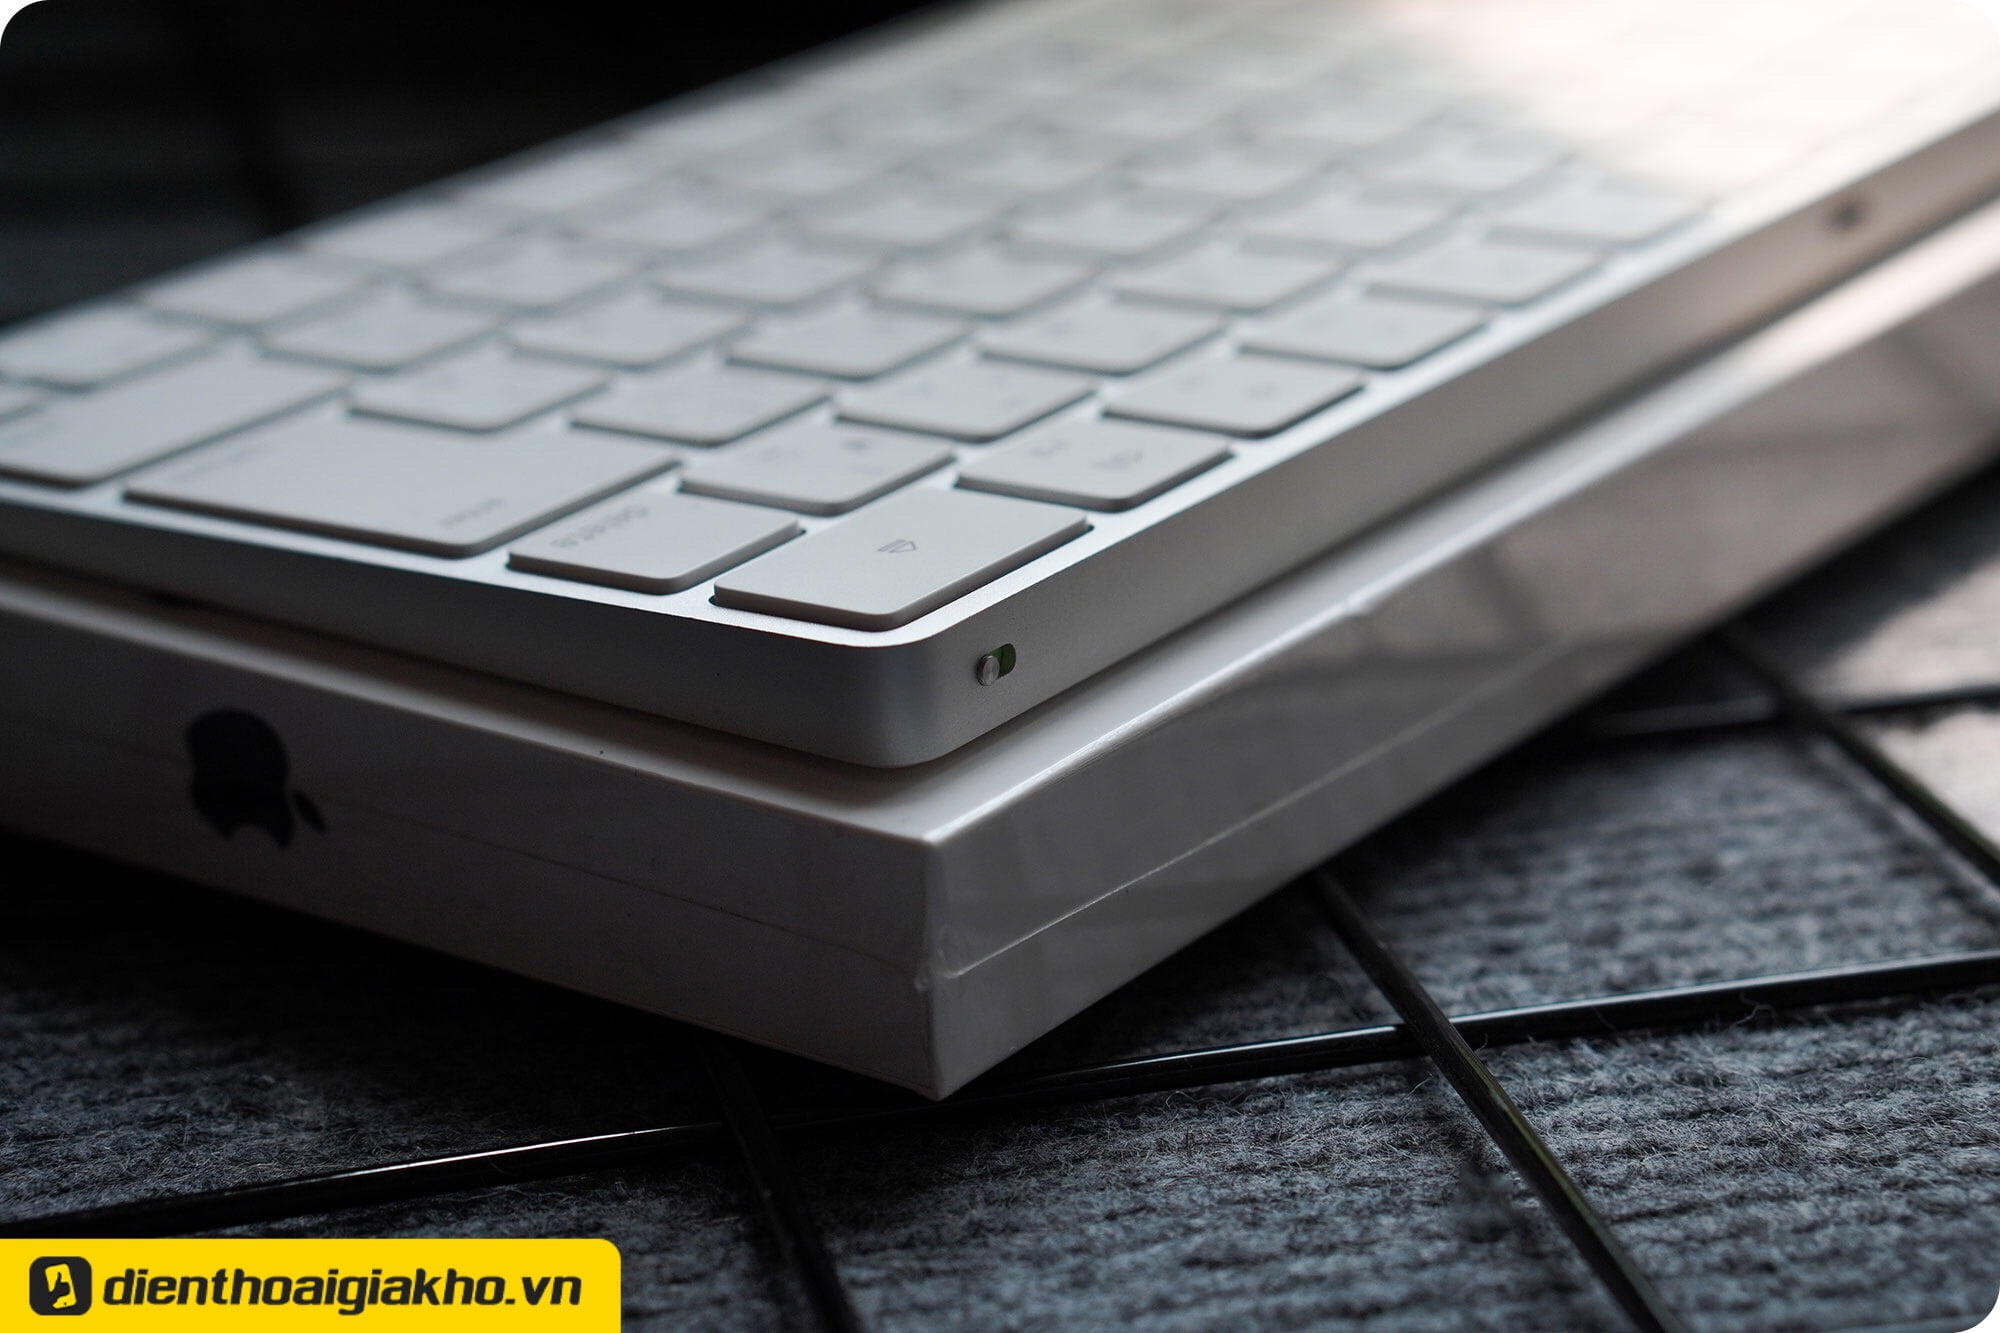 Bàn phím Apple Magic Keyboard có kích cỡ hết sức gọn gàng. Hai sắc màu chủ đạo được lựa chọn là bạc và trắng tô điểm diện mạo trang nhã và chuyên nghiệp của sản phẩm.